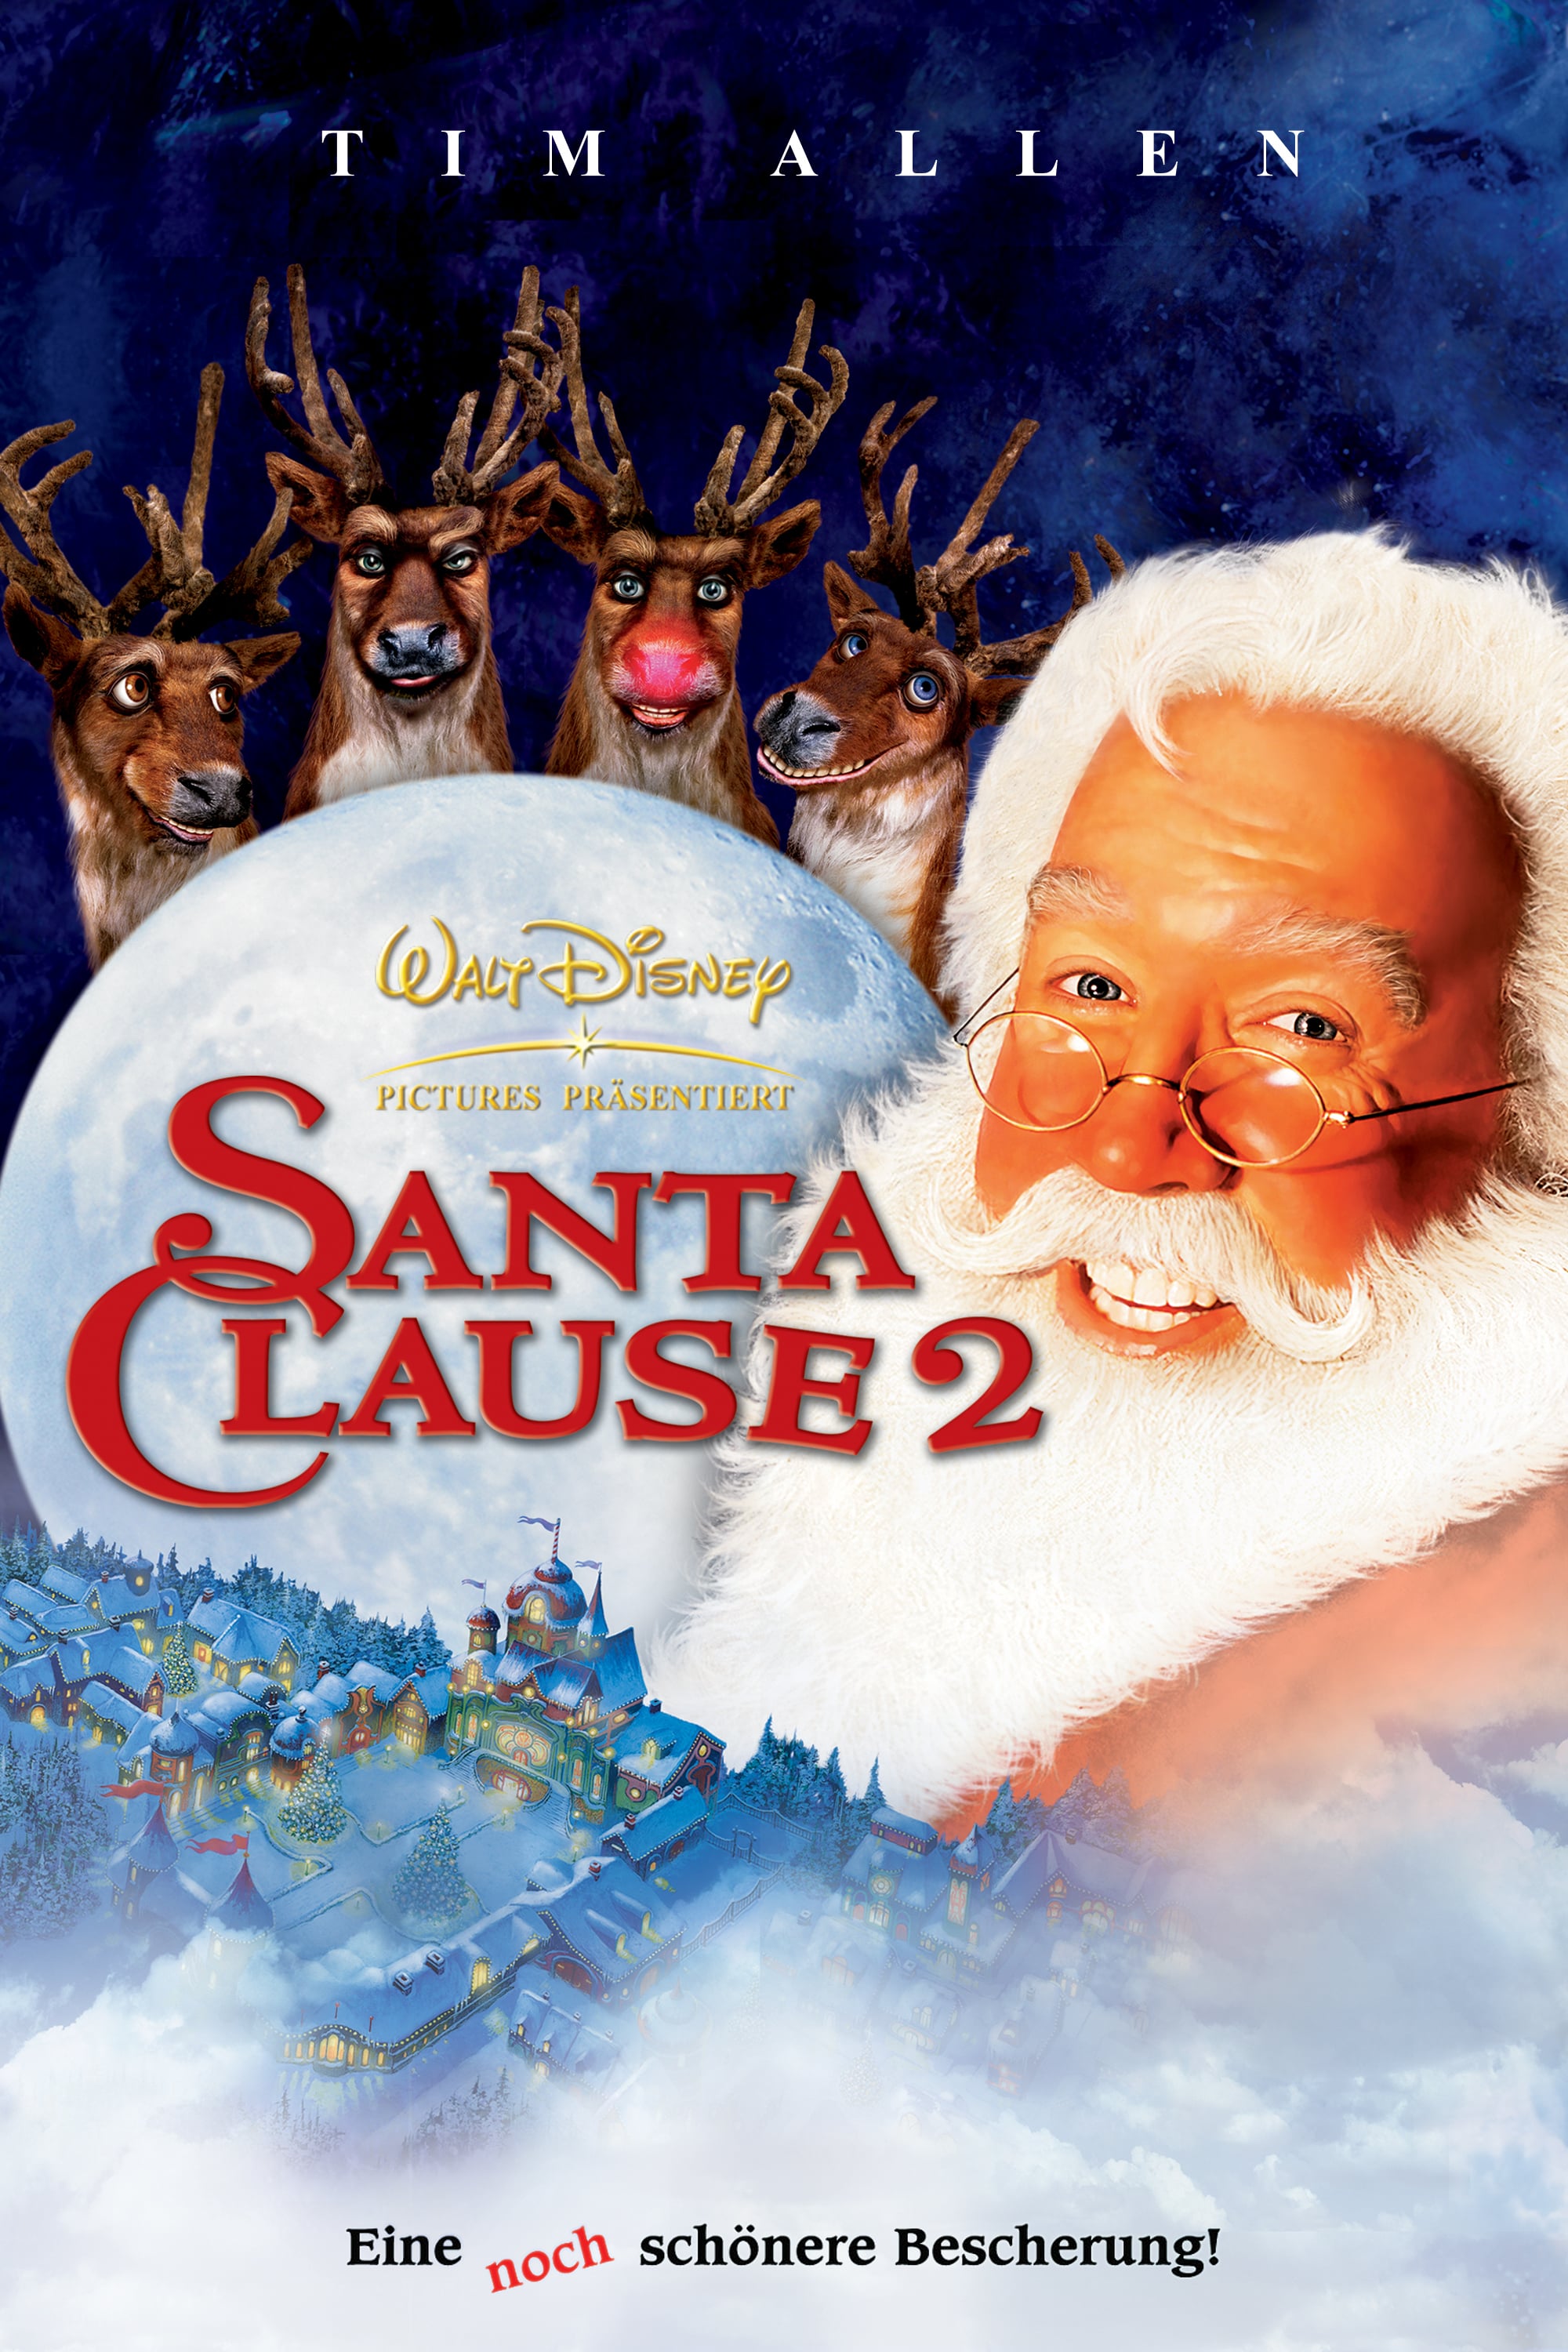 Plakat von "Santa Clause 2 - Eine noch schönere Bescherung"